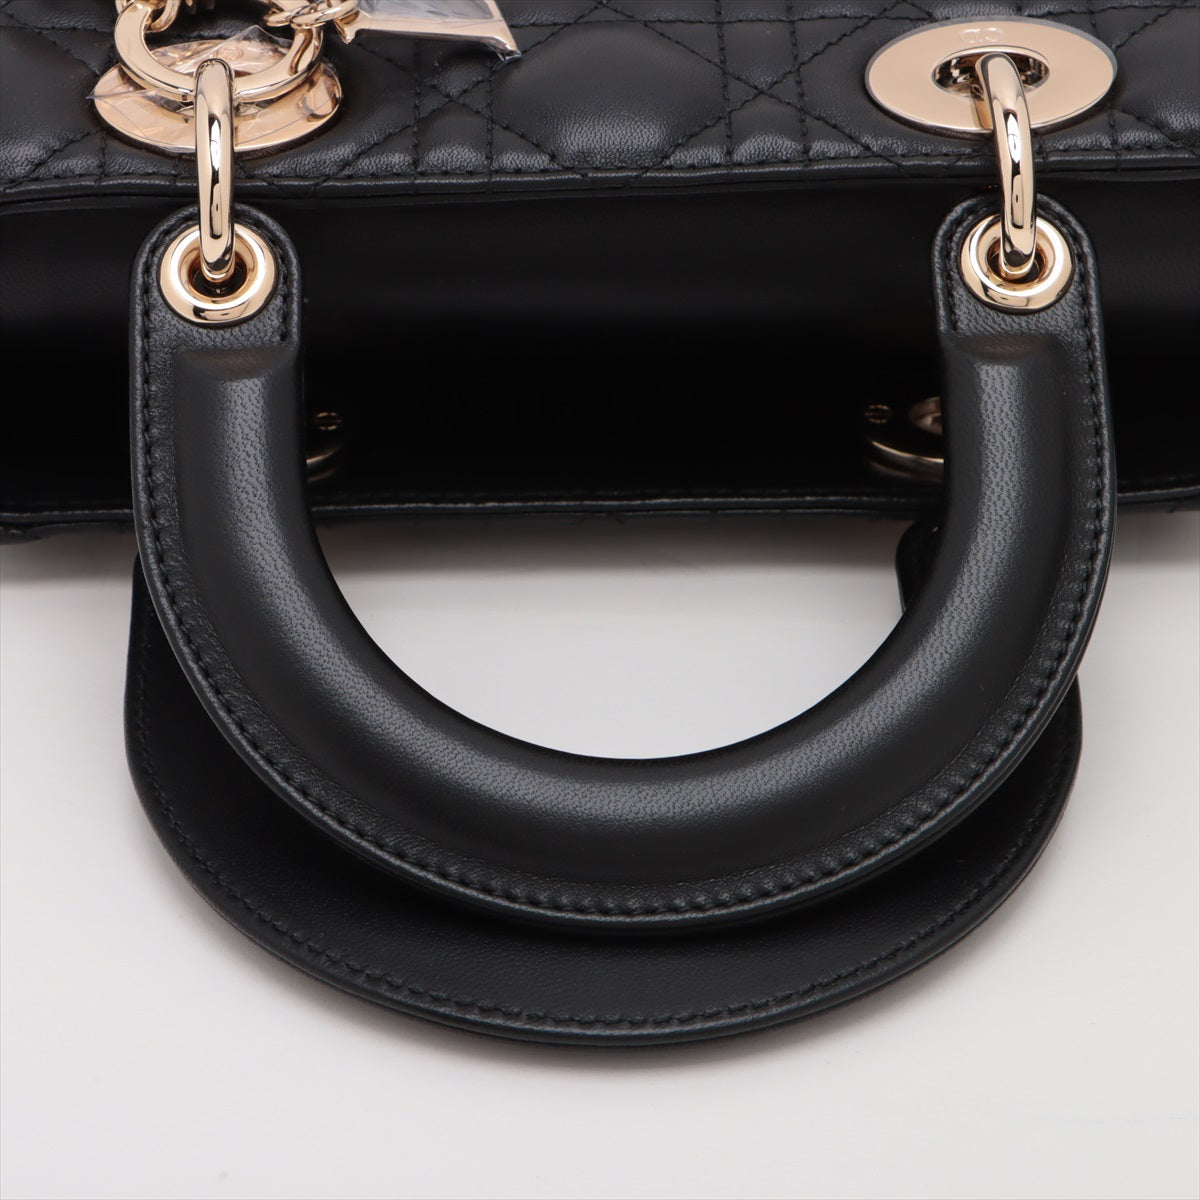 Christian Dior My Lady Dior Cannage Leather 2way handbag Black